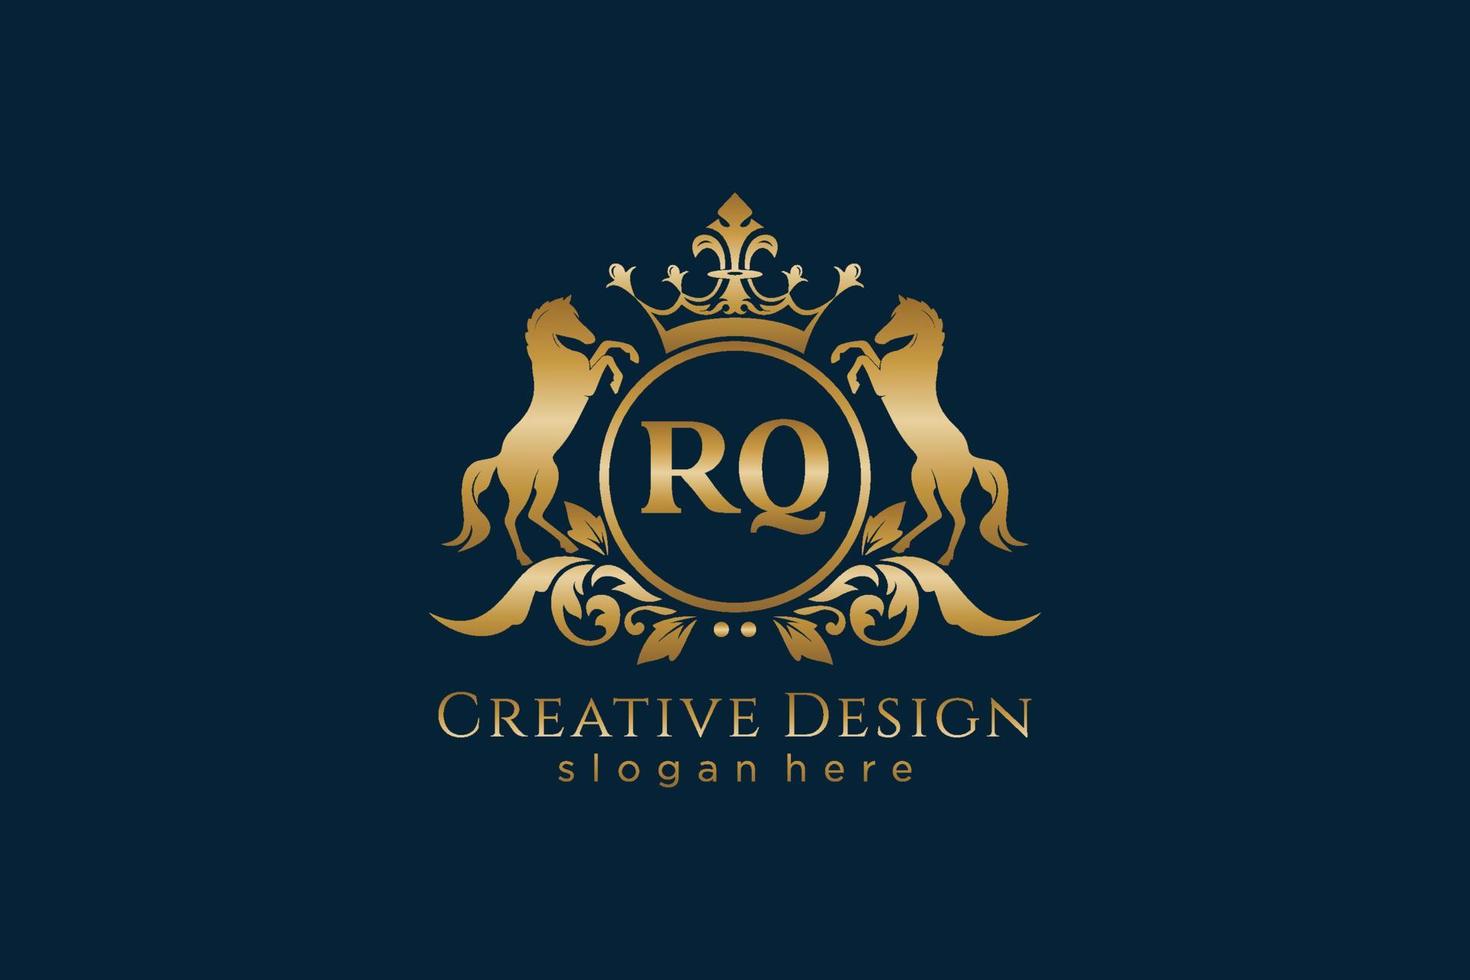 cresta dorada retro rq inicial con círculo y dos caballos, plantilla de insignia con pergaminos y corona real - perfecto para proyectos de marca de lujo vector